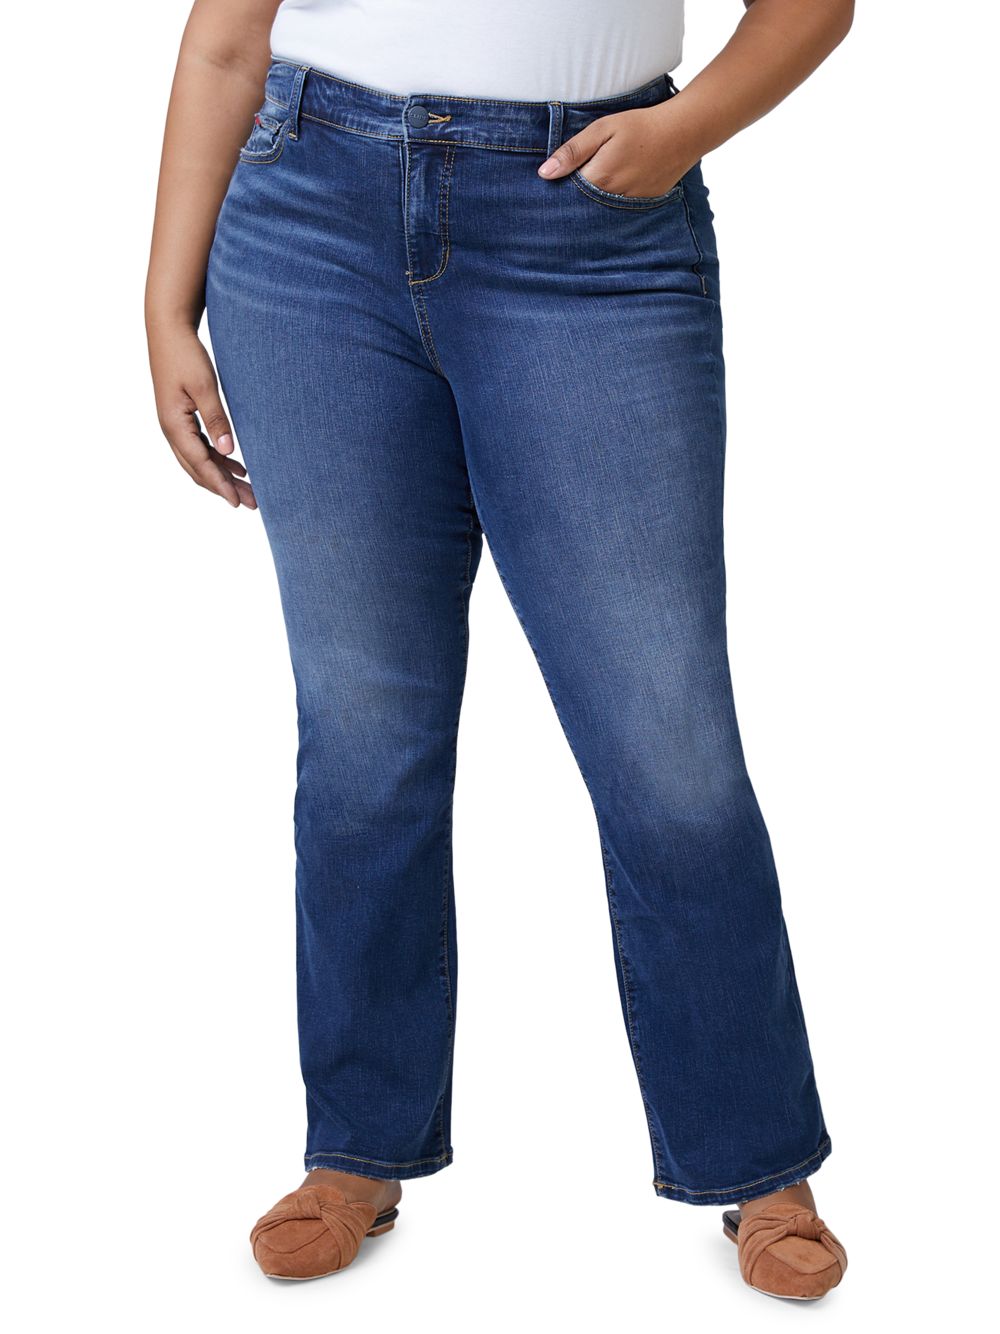 Джинсы Bootcut с высокой посадкой Slink Jeans, Plus Size джинсы бойфренды kennedi со средней посадкой slink jeans plus size цвет kennedi